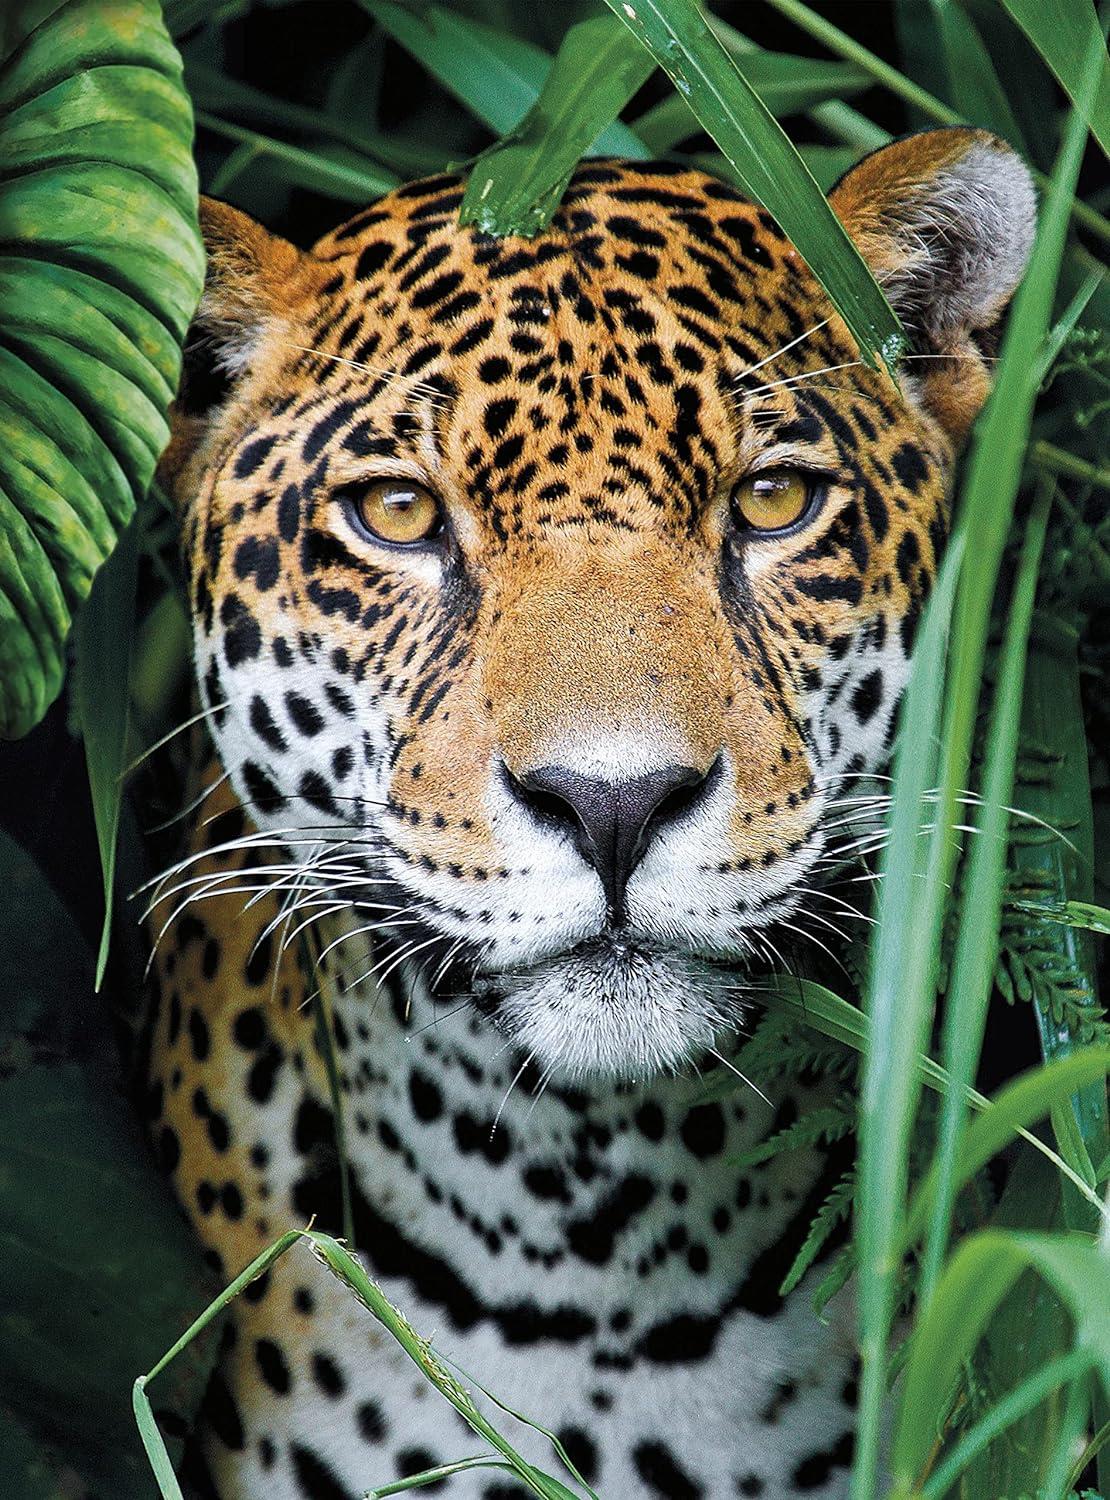 Clementoni  Jaguar In The Jungle Jigsaw Puzzle (500 Pieces)